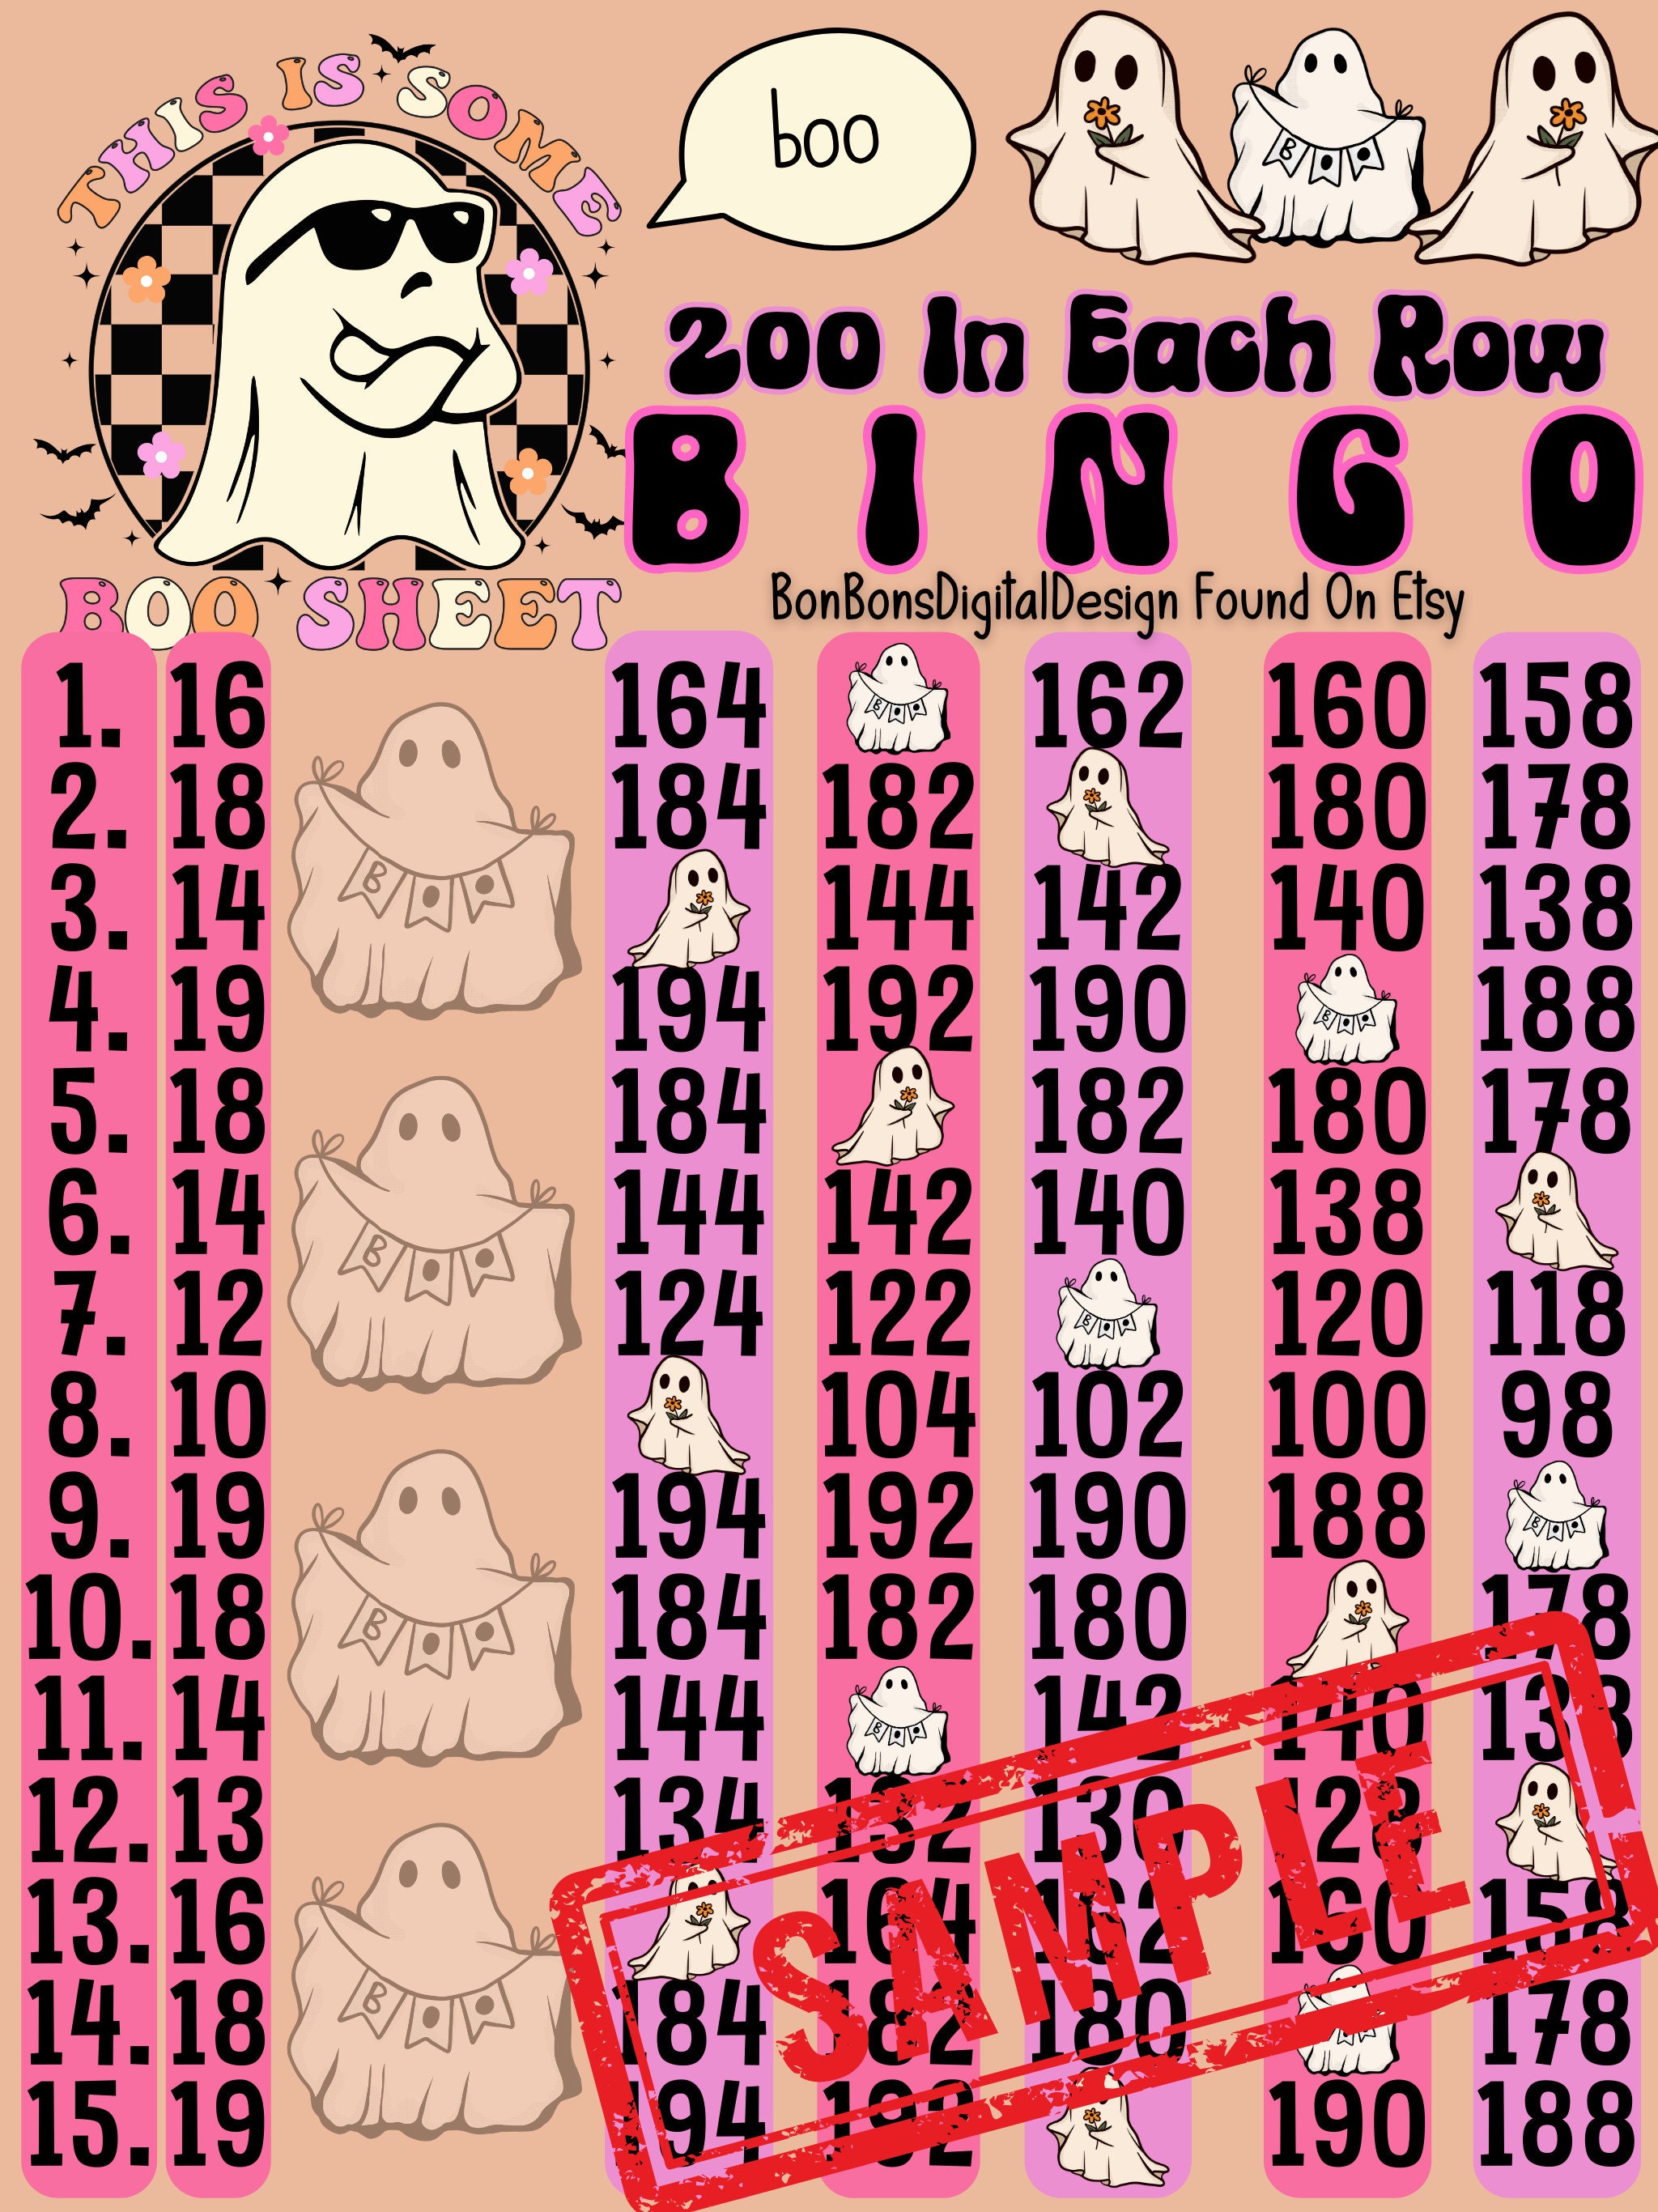 Sunshine & Daisies 400 WTA 15 Line PYP Themed Bingo Board 